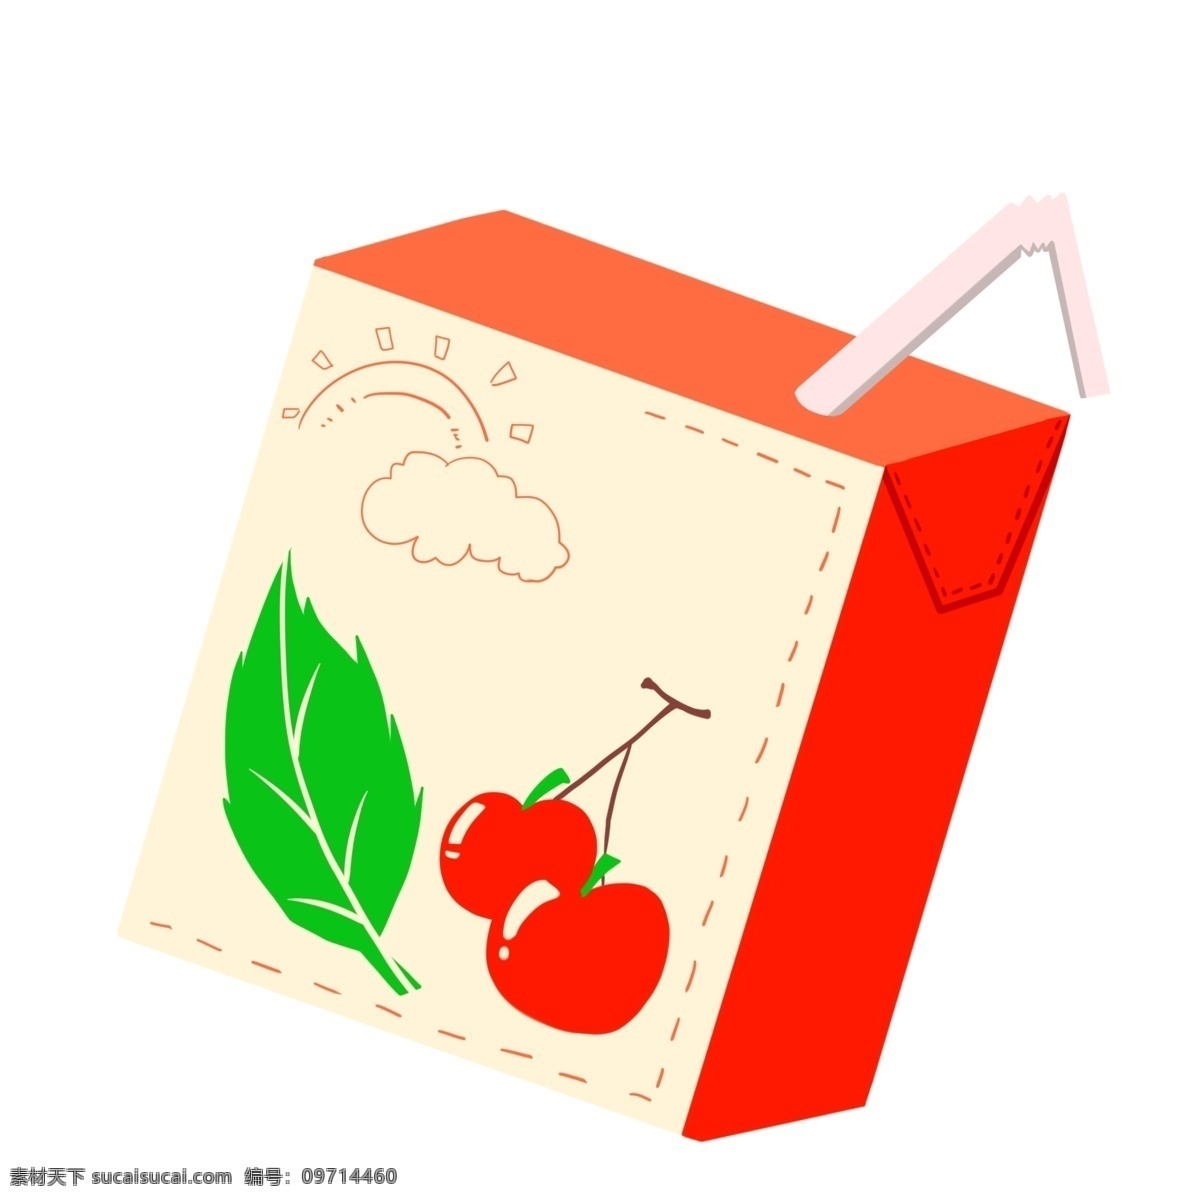 夏季 夏至 水果 饮料 夏天 盒装 果汁